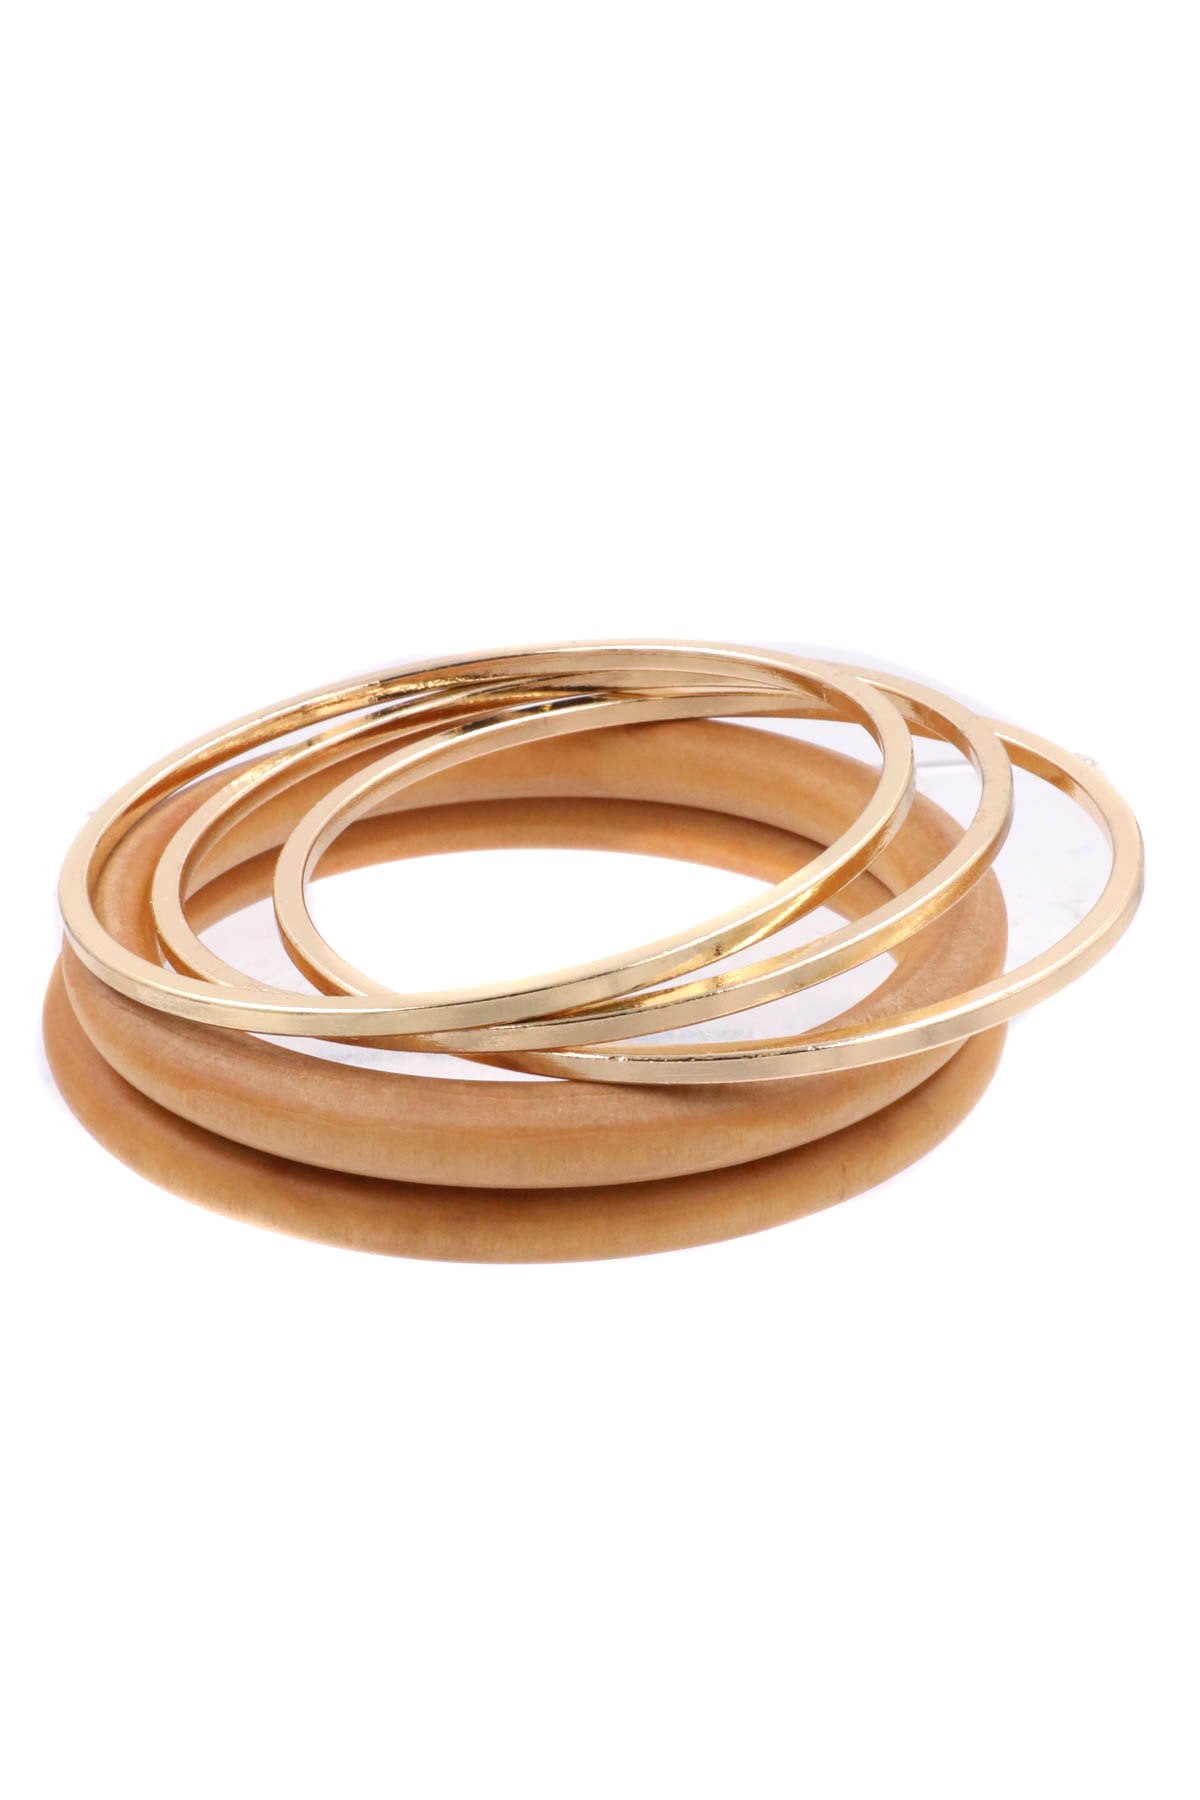 GOLD Metal/Wood Bangle Bracelet Set - Bracelets